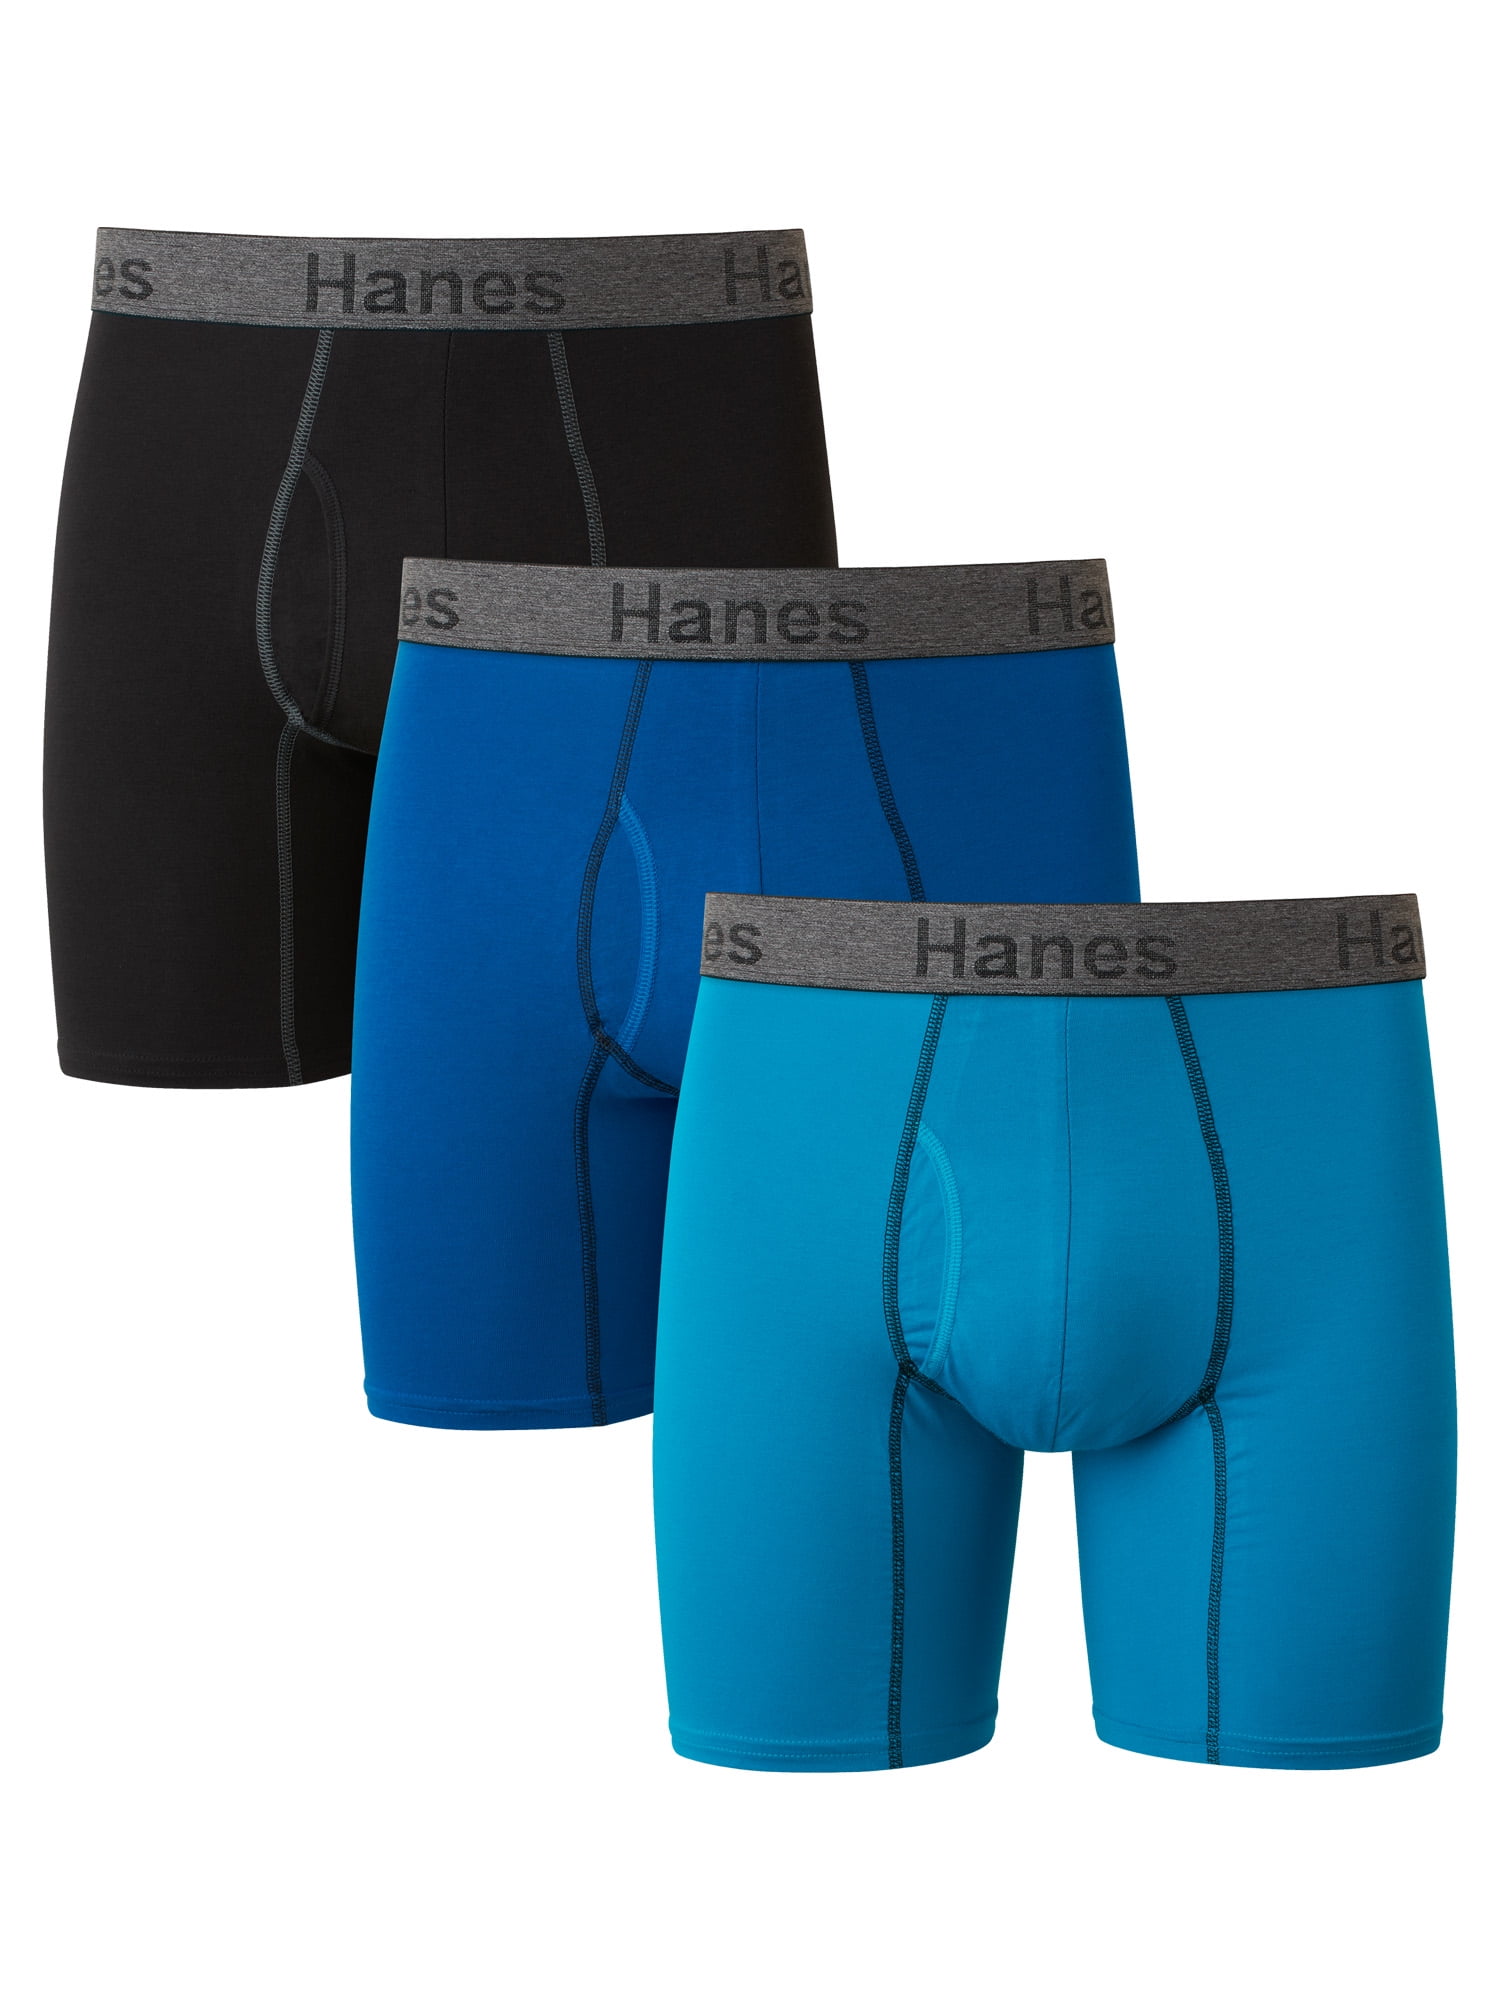 Hanes Sport Assorted Cotton Stretch Brief for Men #X002 at Rs 239.00, Brief Underwear For Men, Pure Cotton Mens Briefs, पुरुषों की सूती ब्रीफ -  Zedds, New Delhi